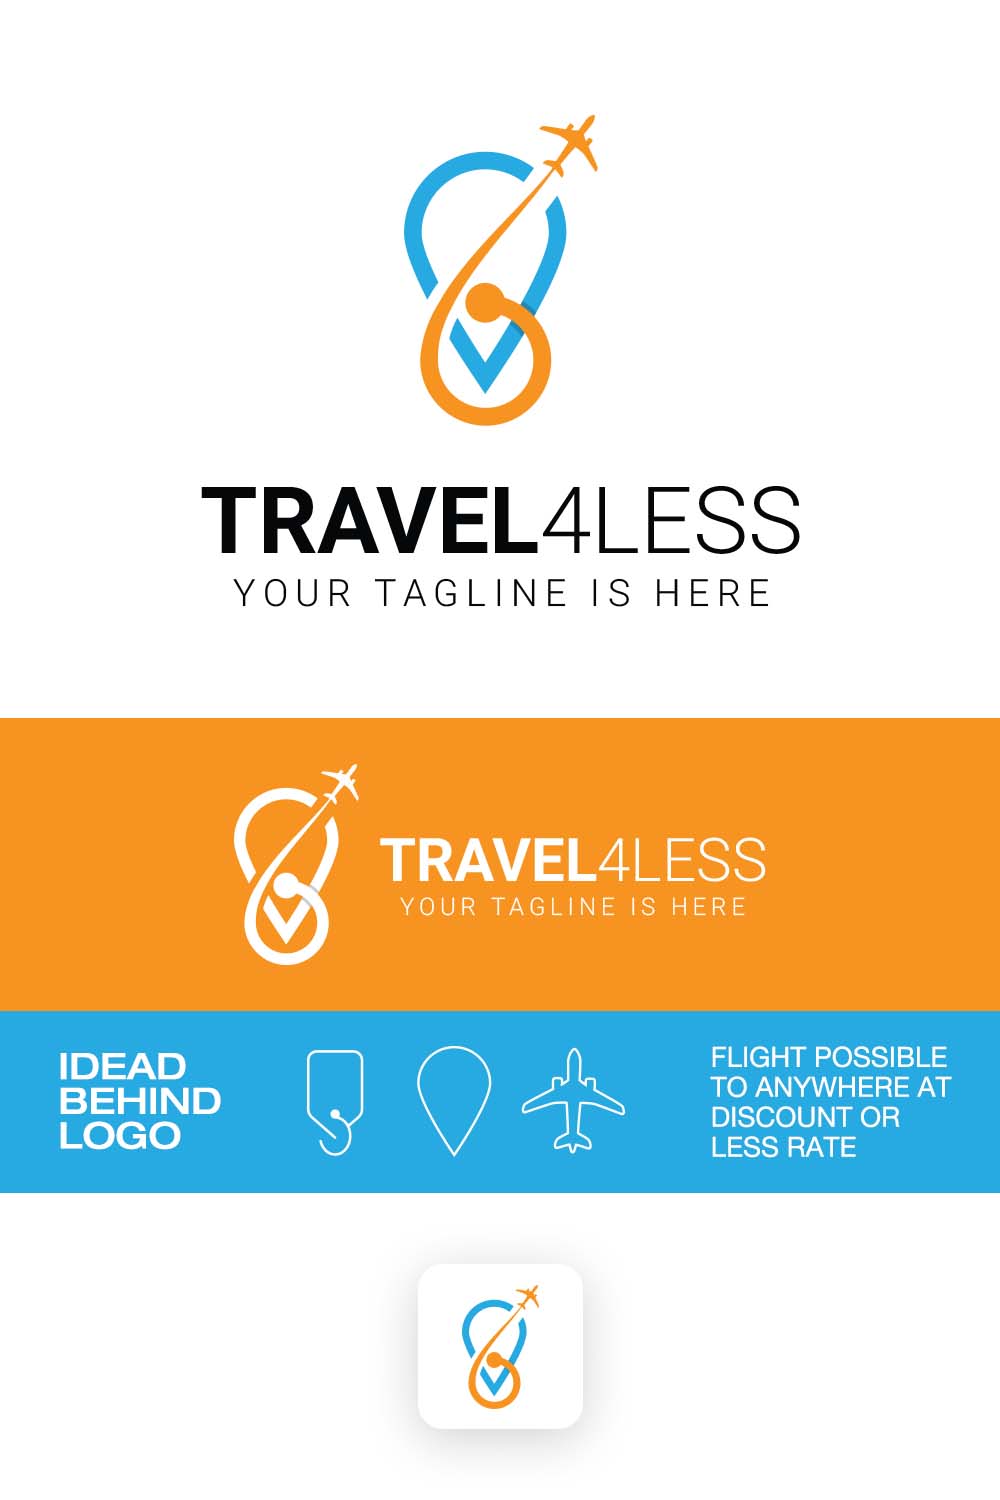 pinterest travel4less logo